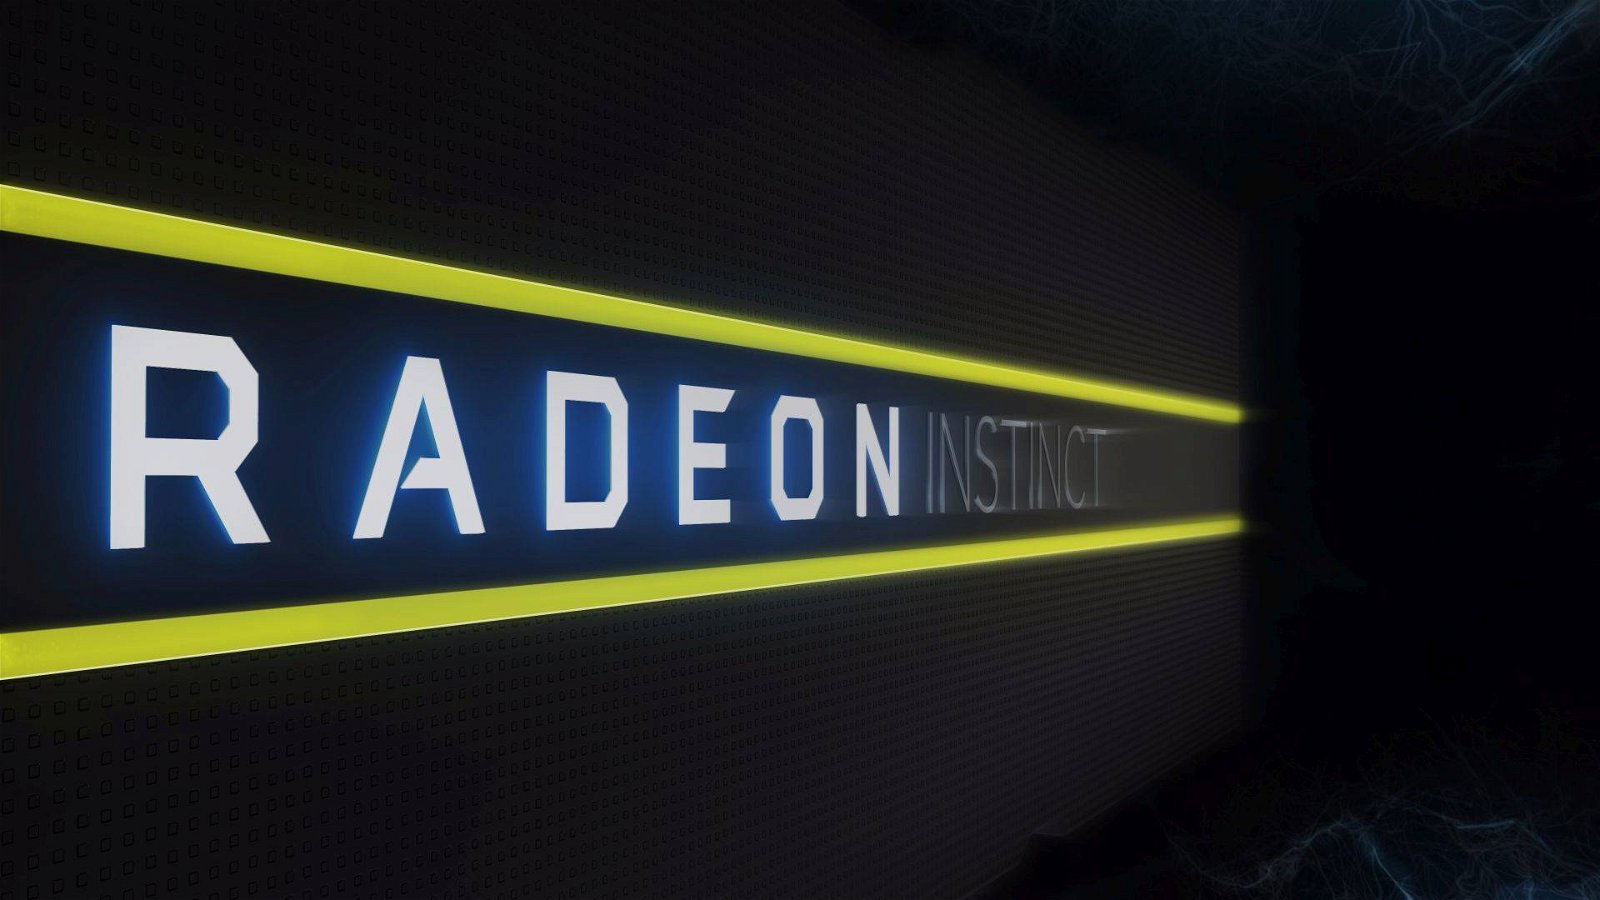 Immagine di AMD Radeon e il supporto al ray tracing, quando una traduzione sbagliata crea un equivoco